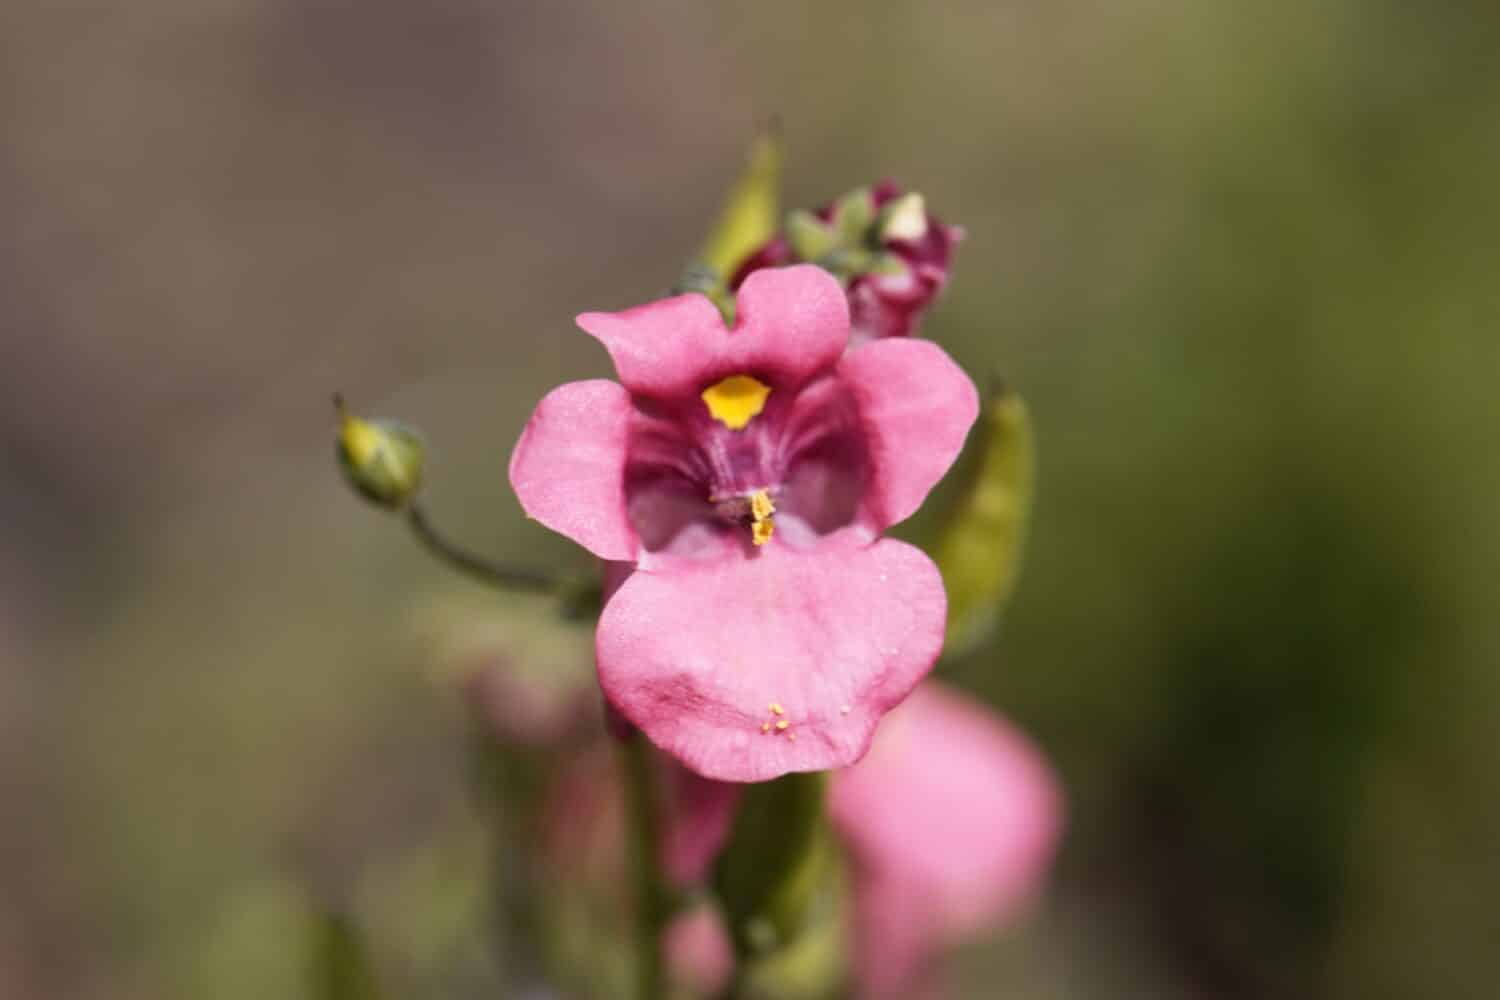 Flower of a Twinspur plant, Diascia barberae